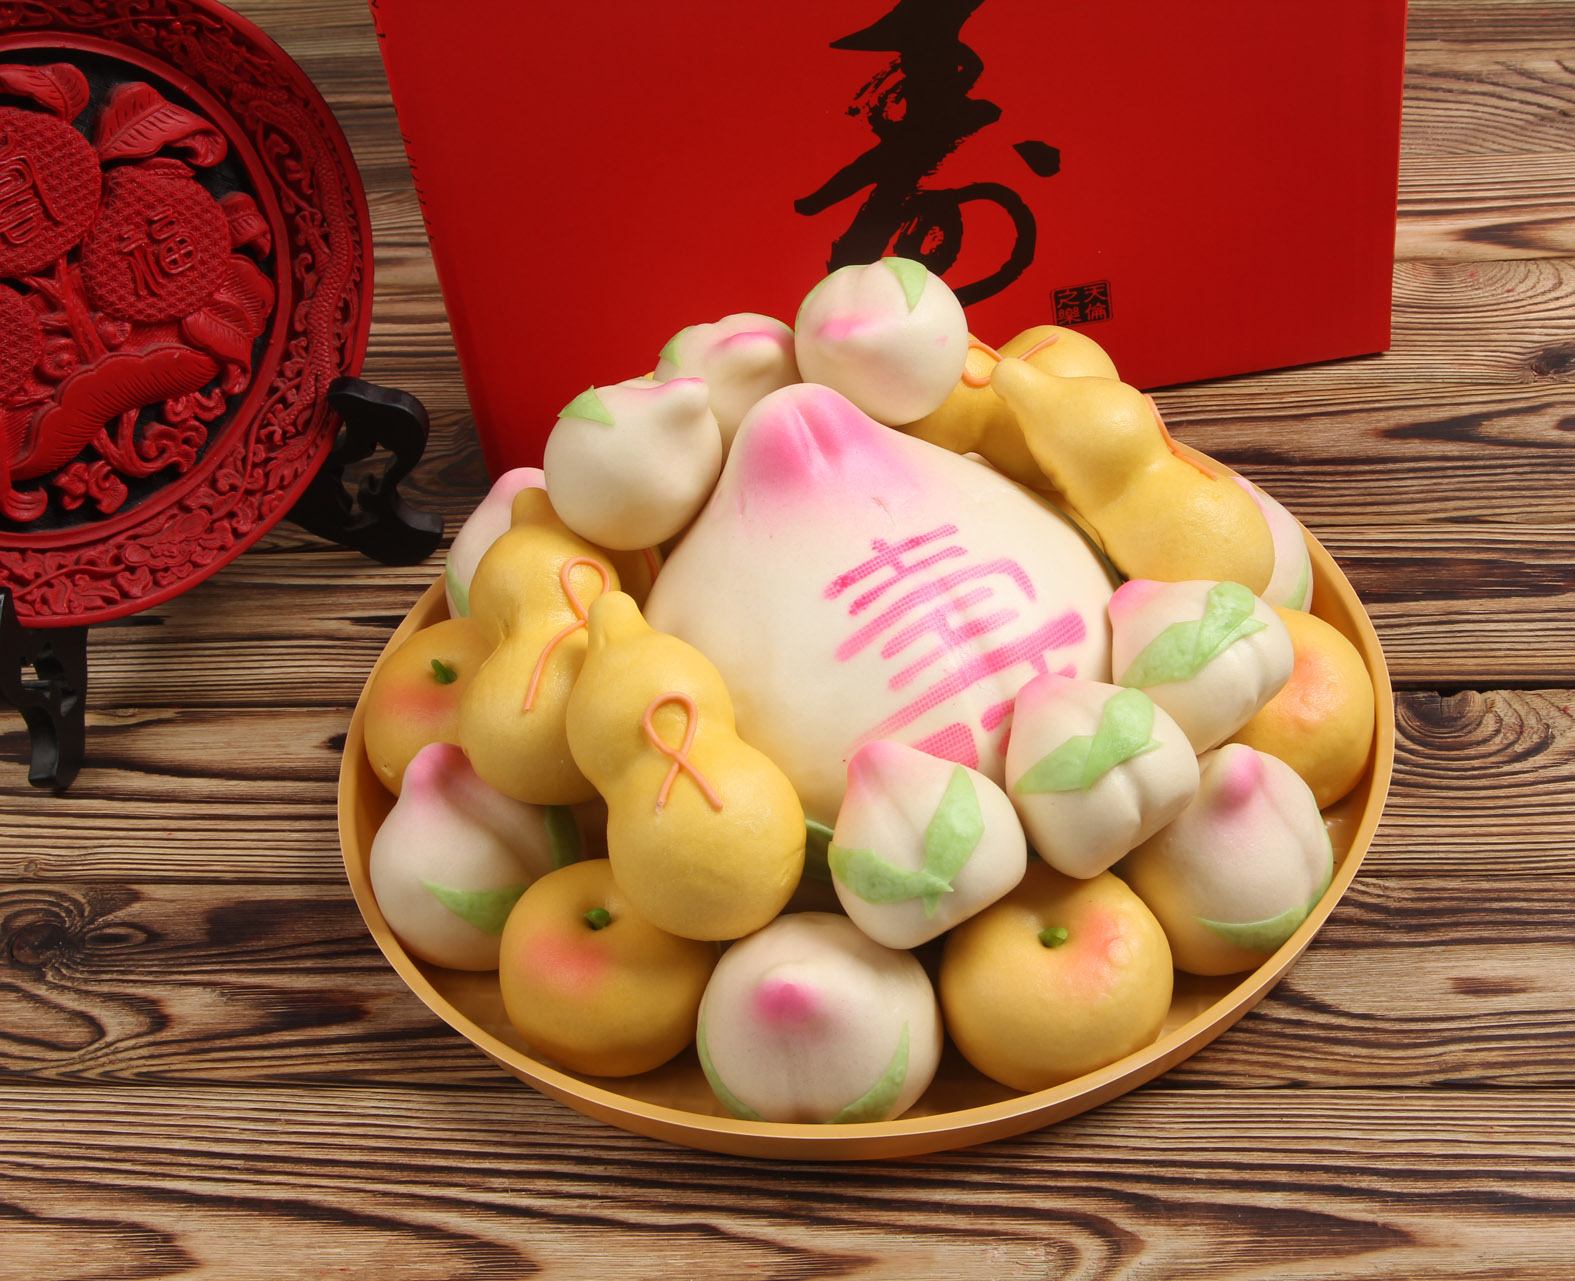 迎鹊堂椿寿寿桃馒头老年人食品特产传统糕点祝寿生日礼物创意年货